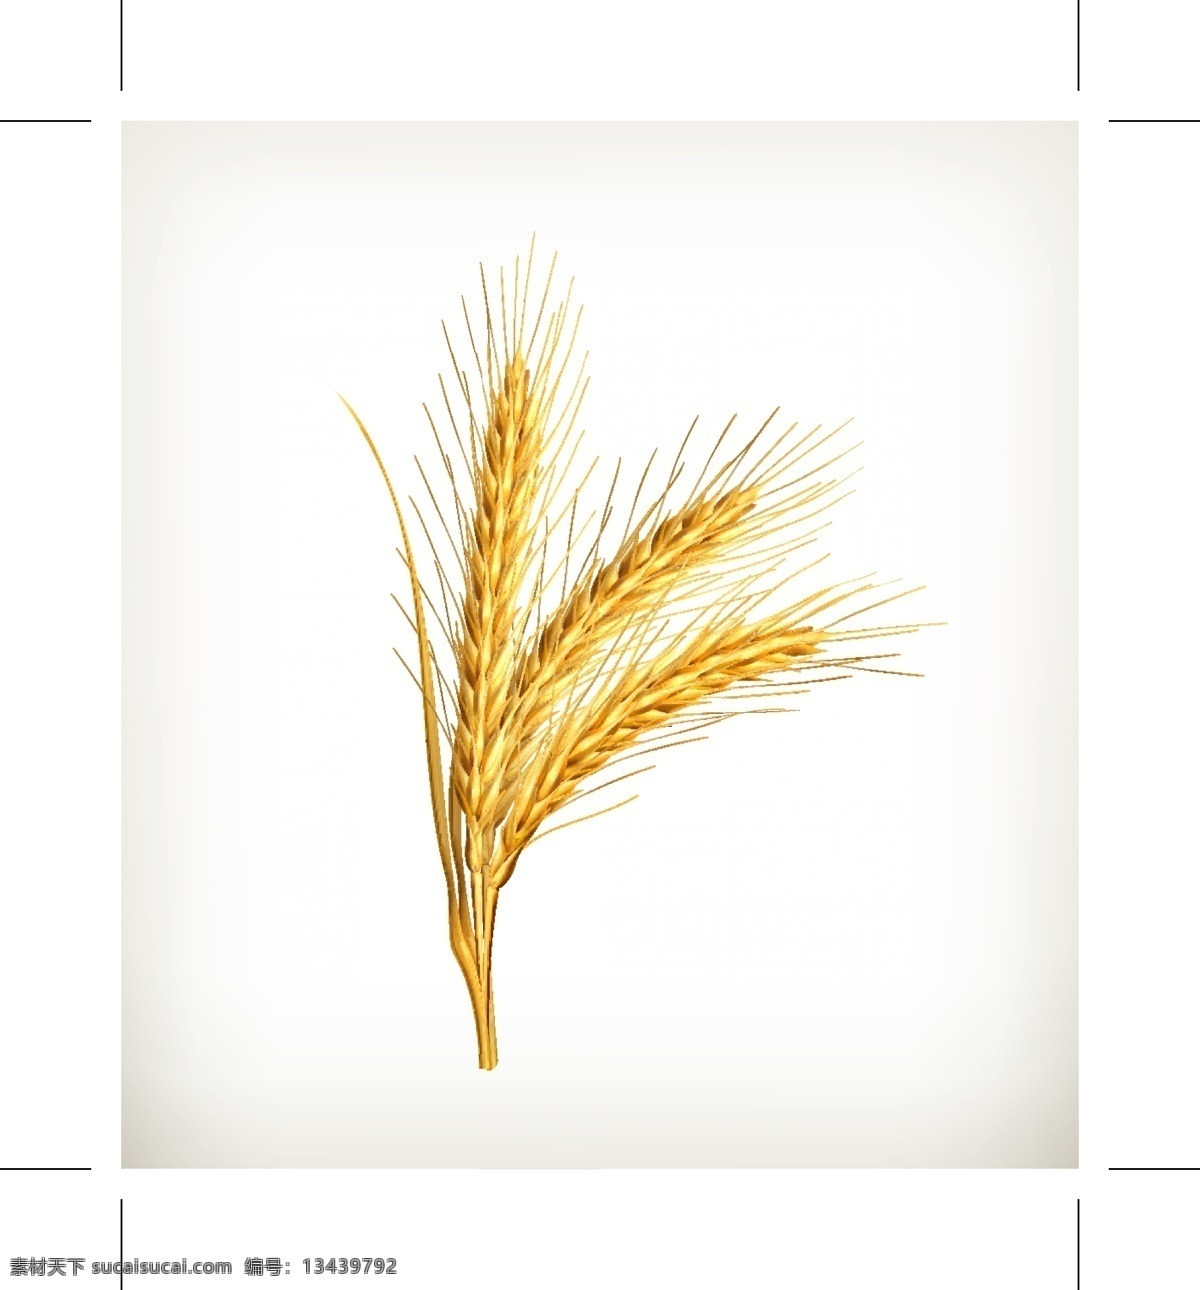 金色小麦元素 小麦 金色 麦穗 矢量素材 设计素材